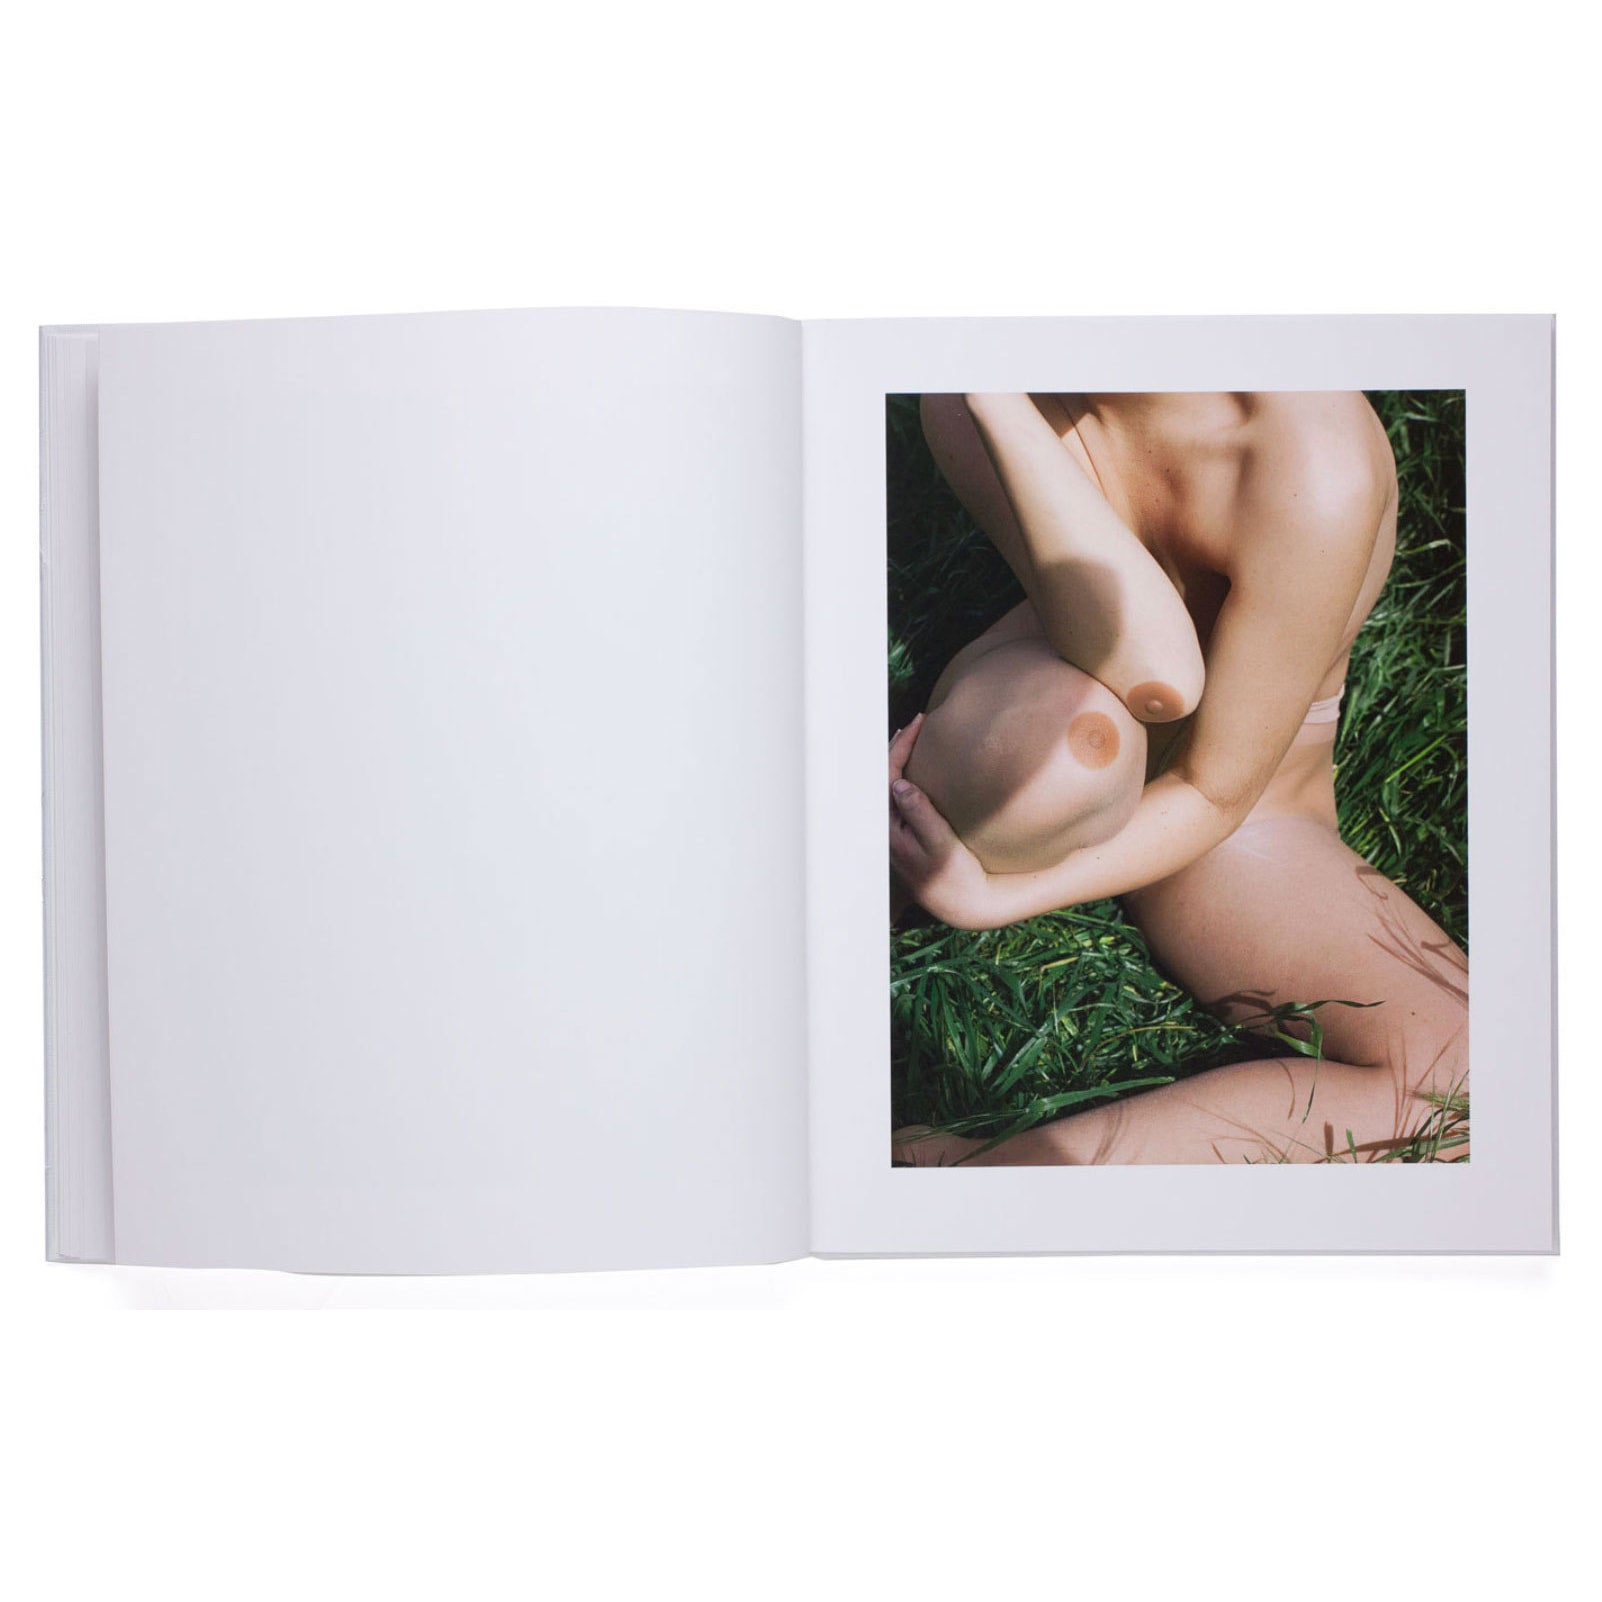 Viviane Sassen Of Mud & Lotus, Out of Print – FORSYTH